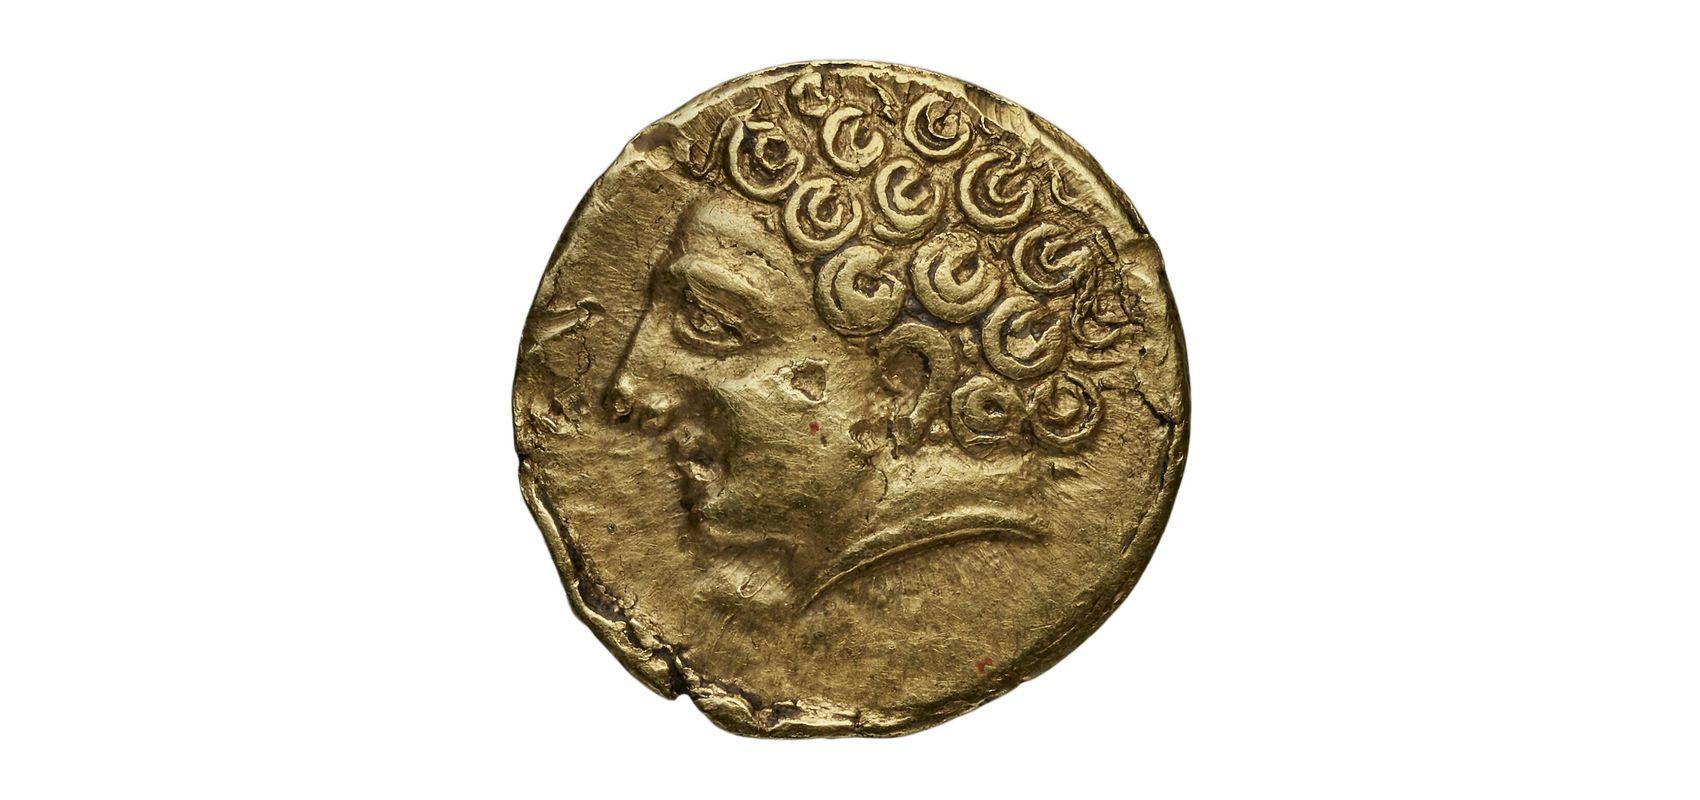 Monnaie. Quart de Statère, or, fonds celtique, Leuques - -300 - 0 - BnF, département des Monnaies, médailles et antiques